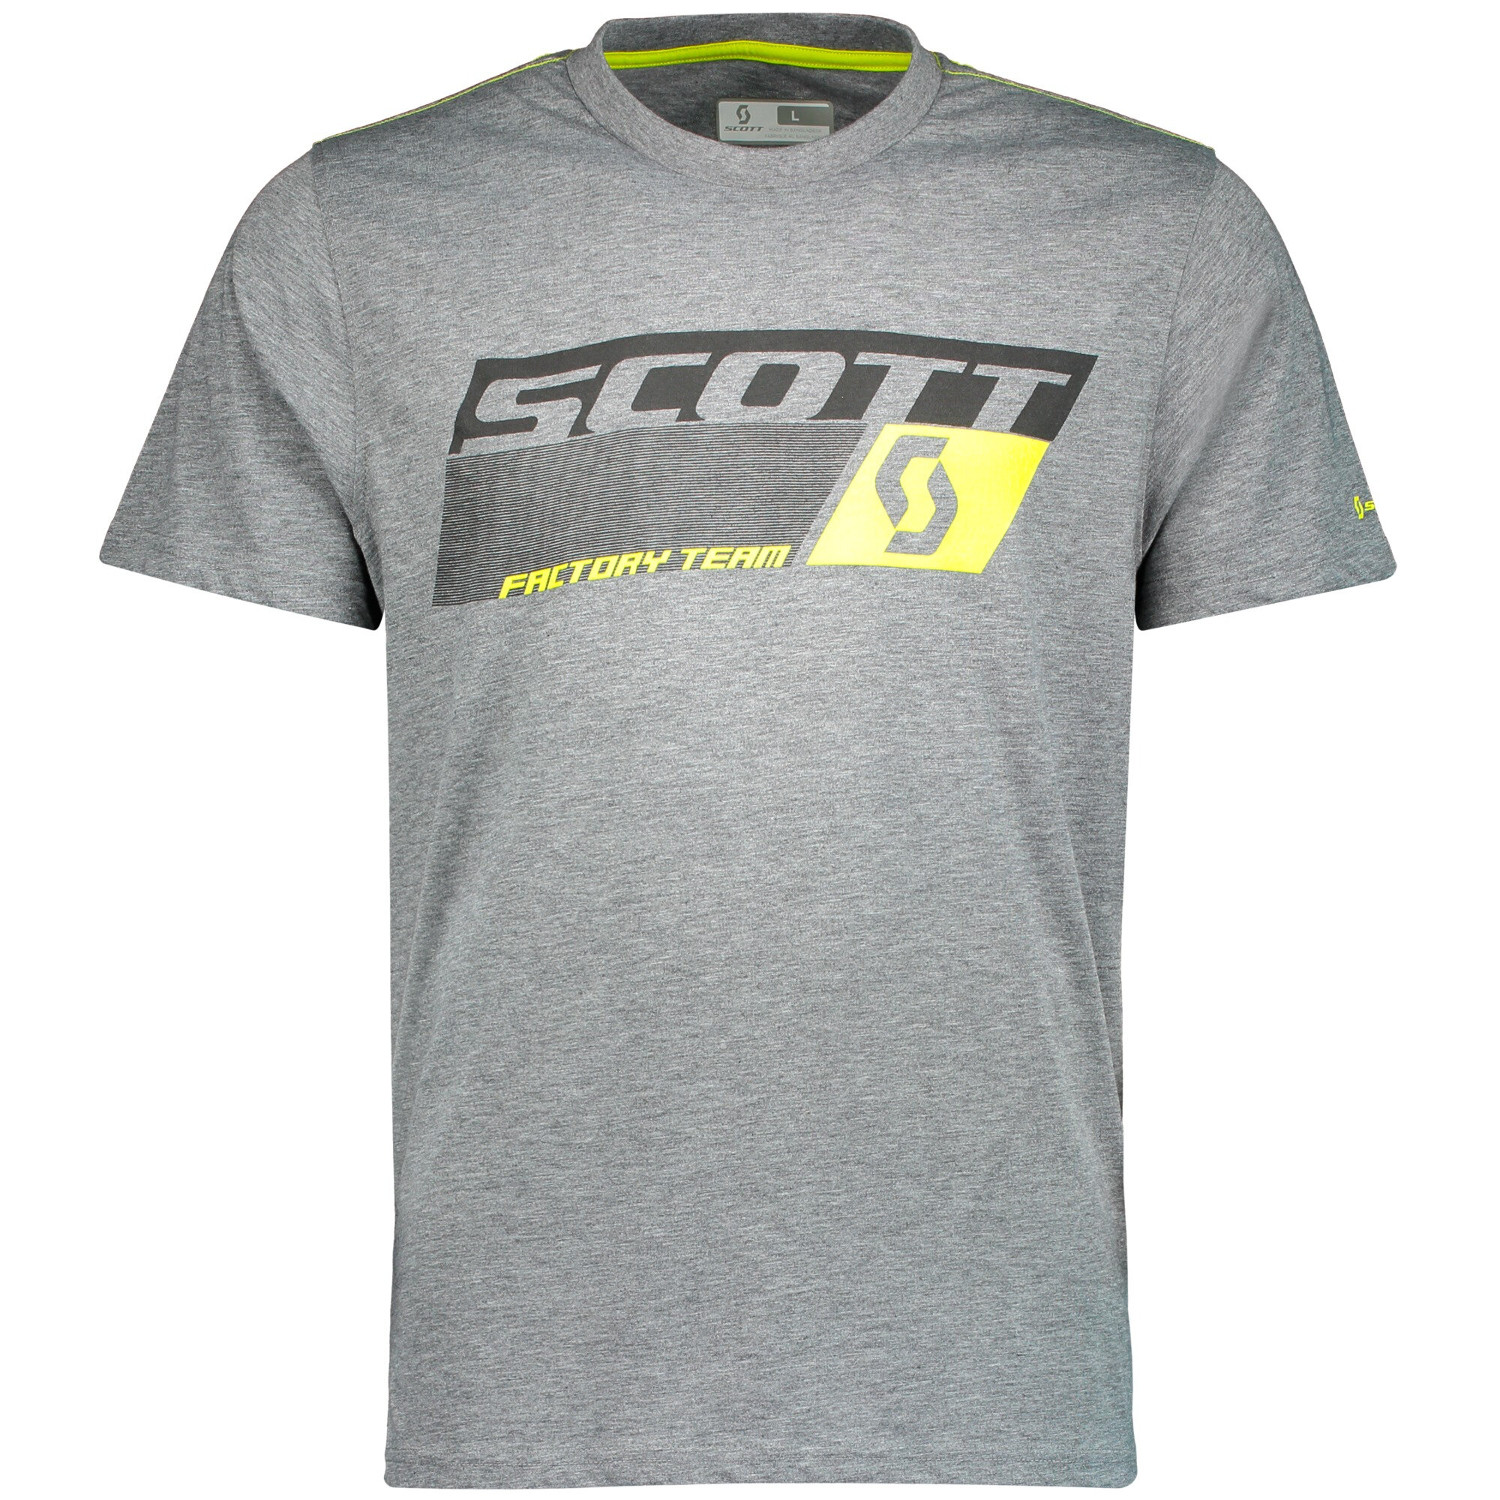 Scott T-Shirt Factory Team Dri Grigio Scuro Melange/Sulphur Giallo